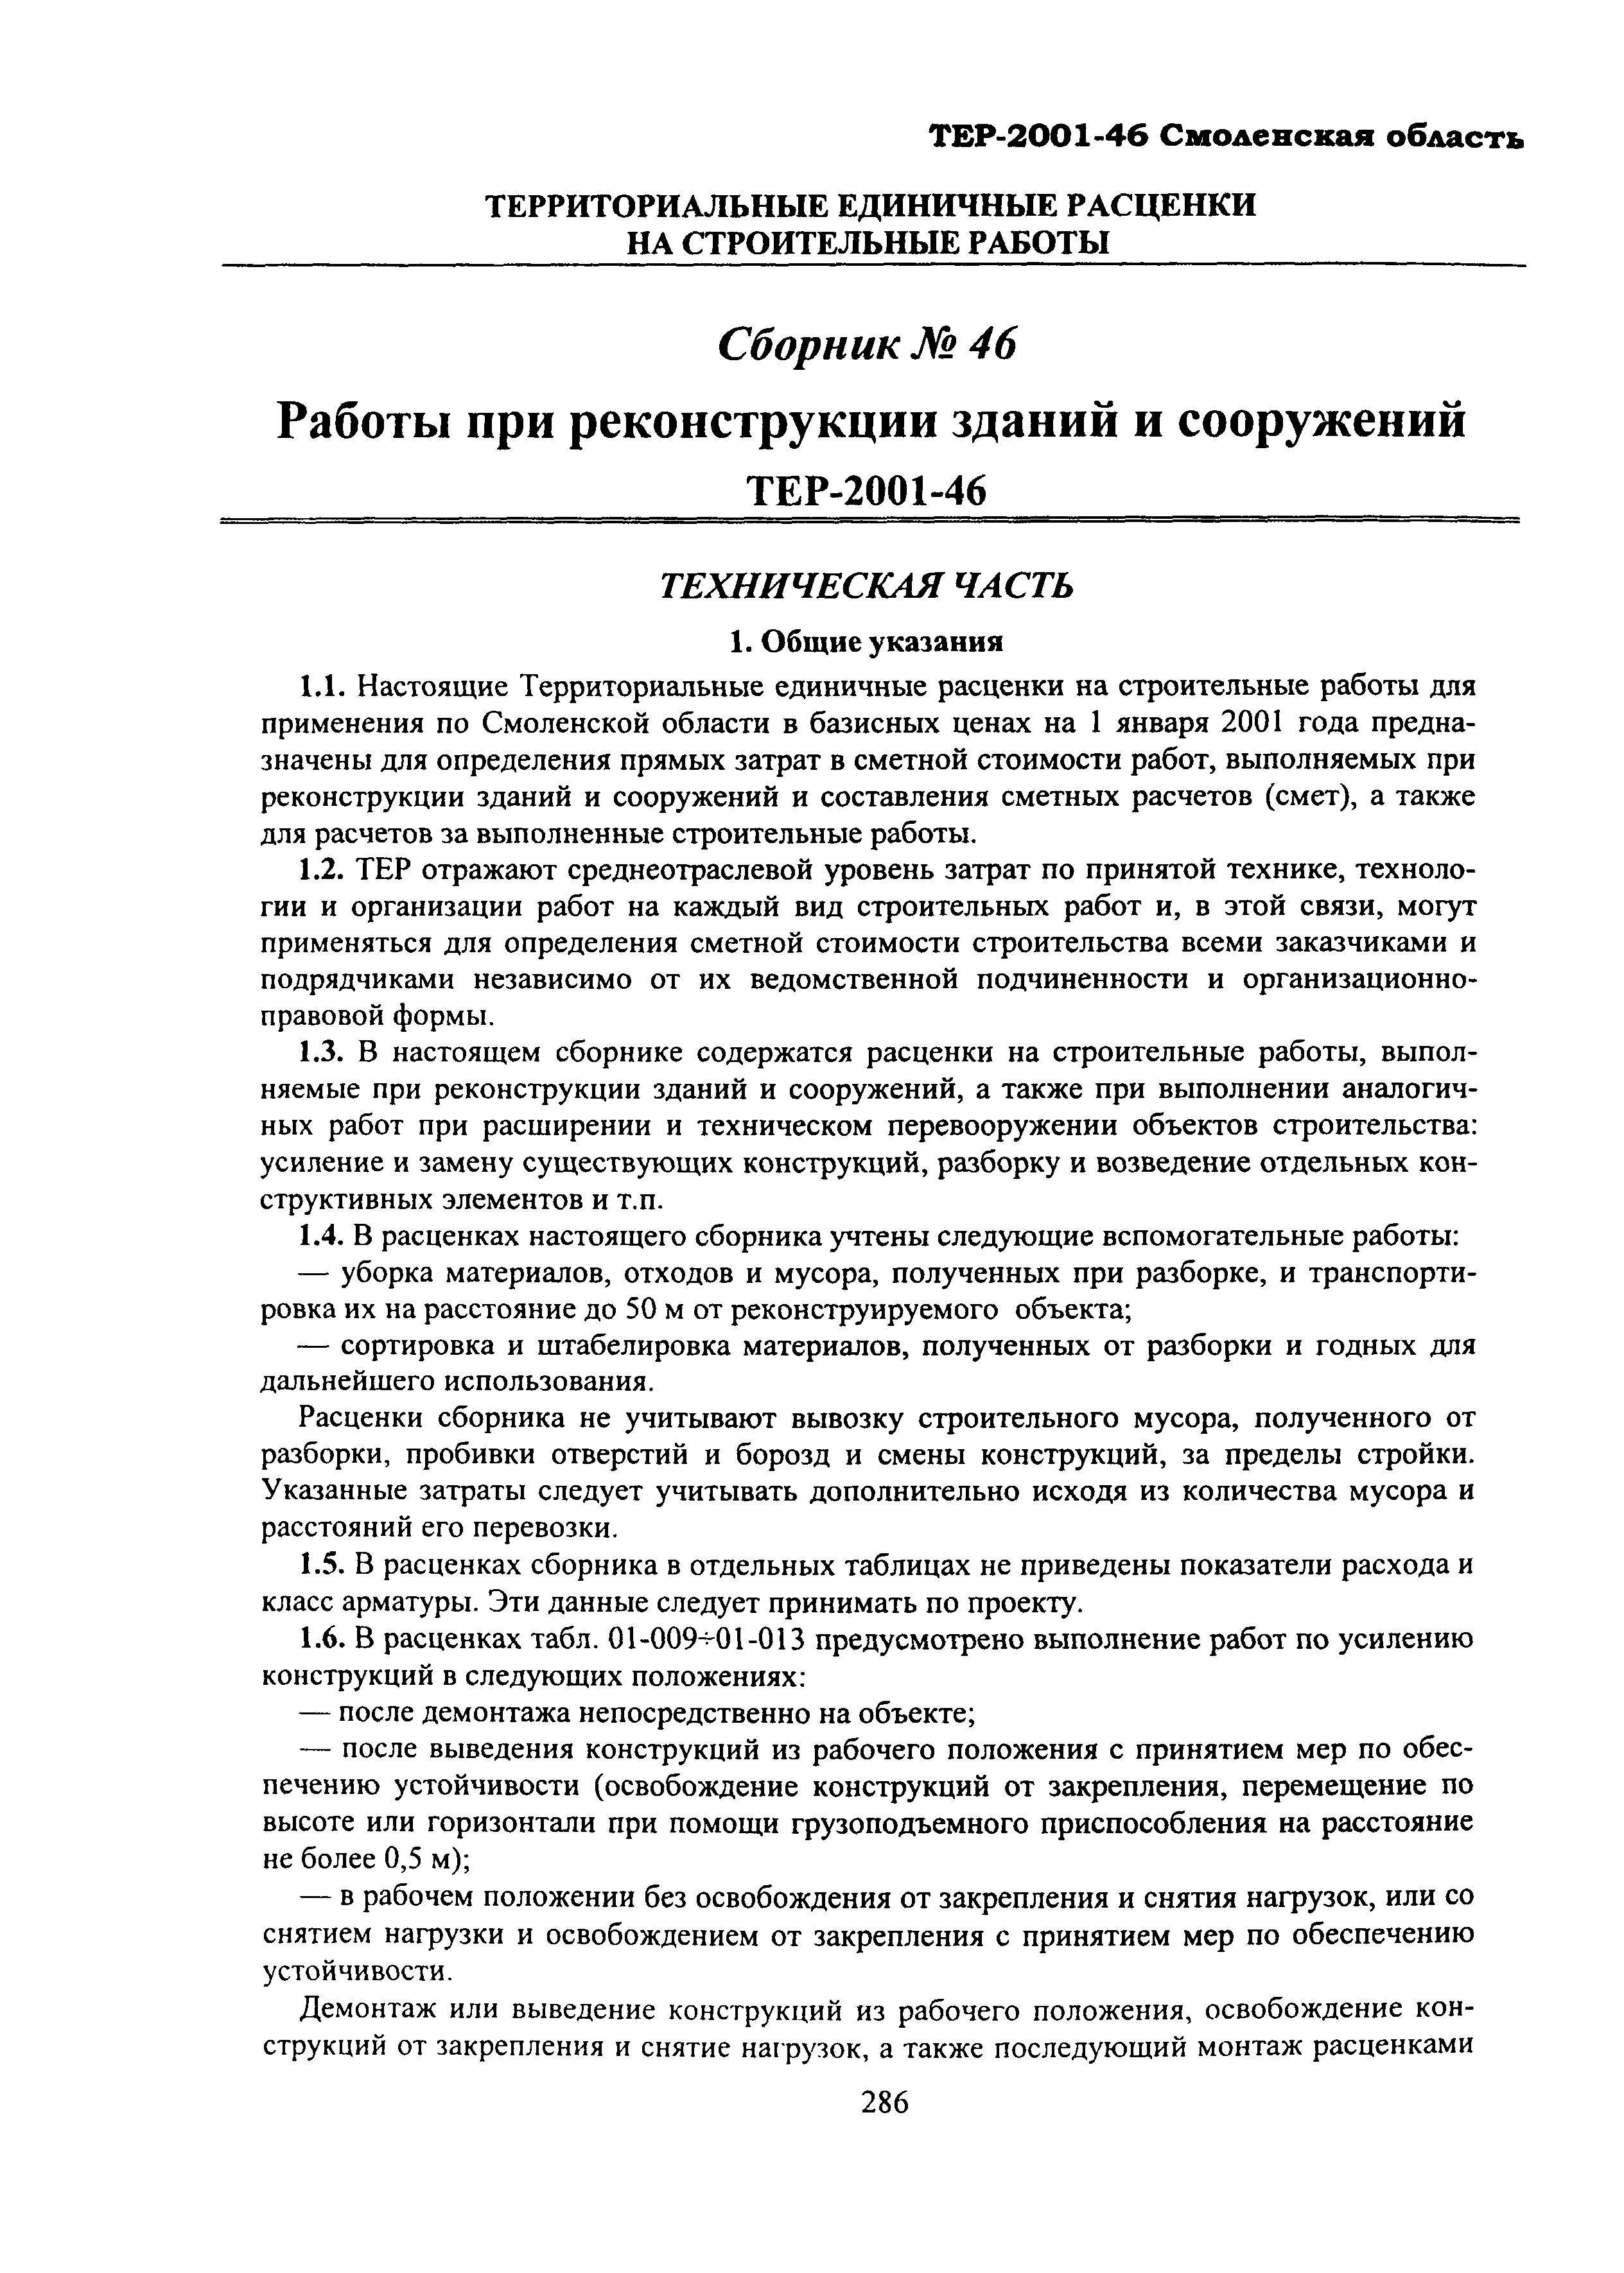 ТЕР Смоленской обл. 2001-46